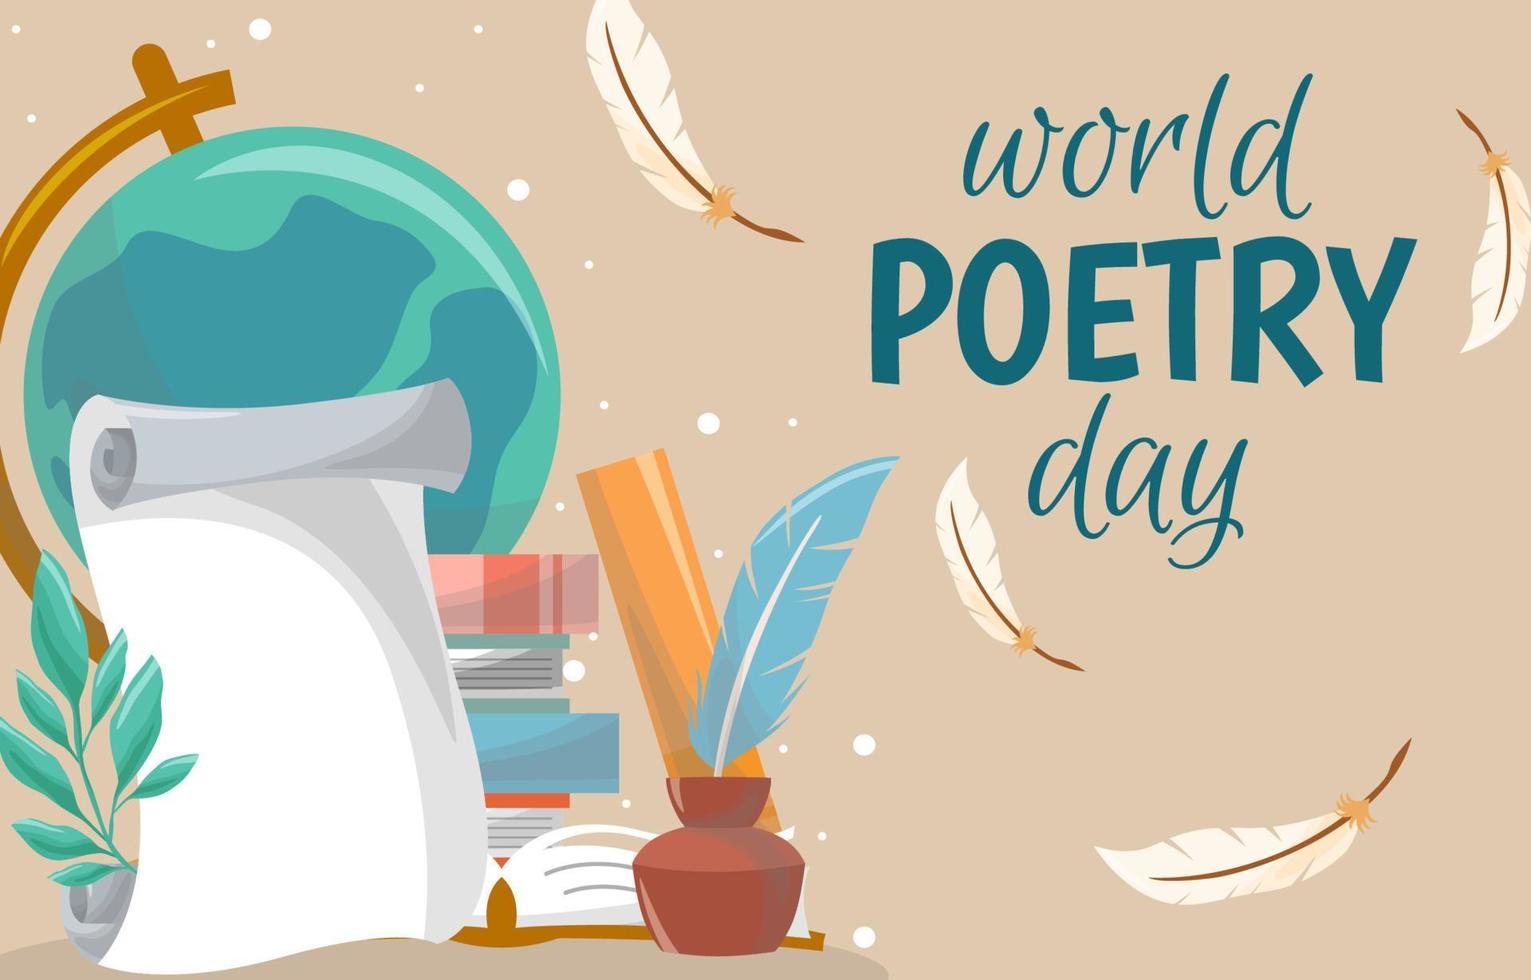 journée mondiale de la poésie fond d'élément dessiné à la main vecteur